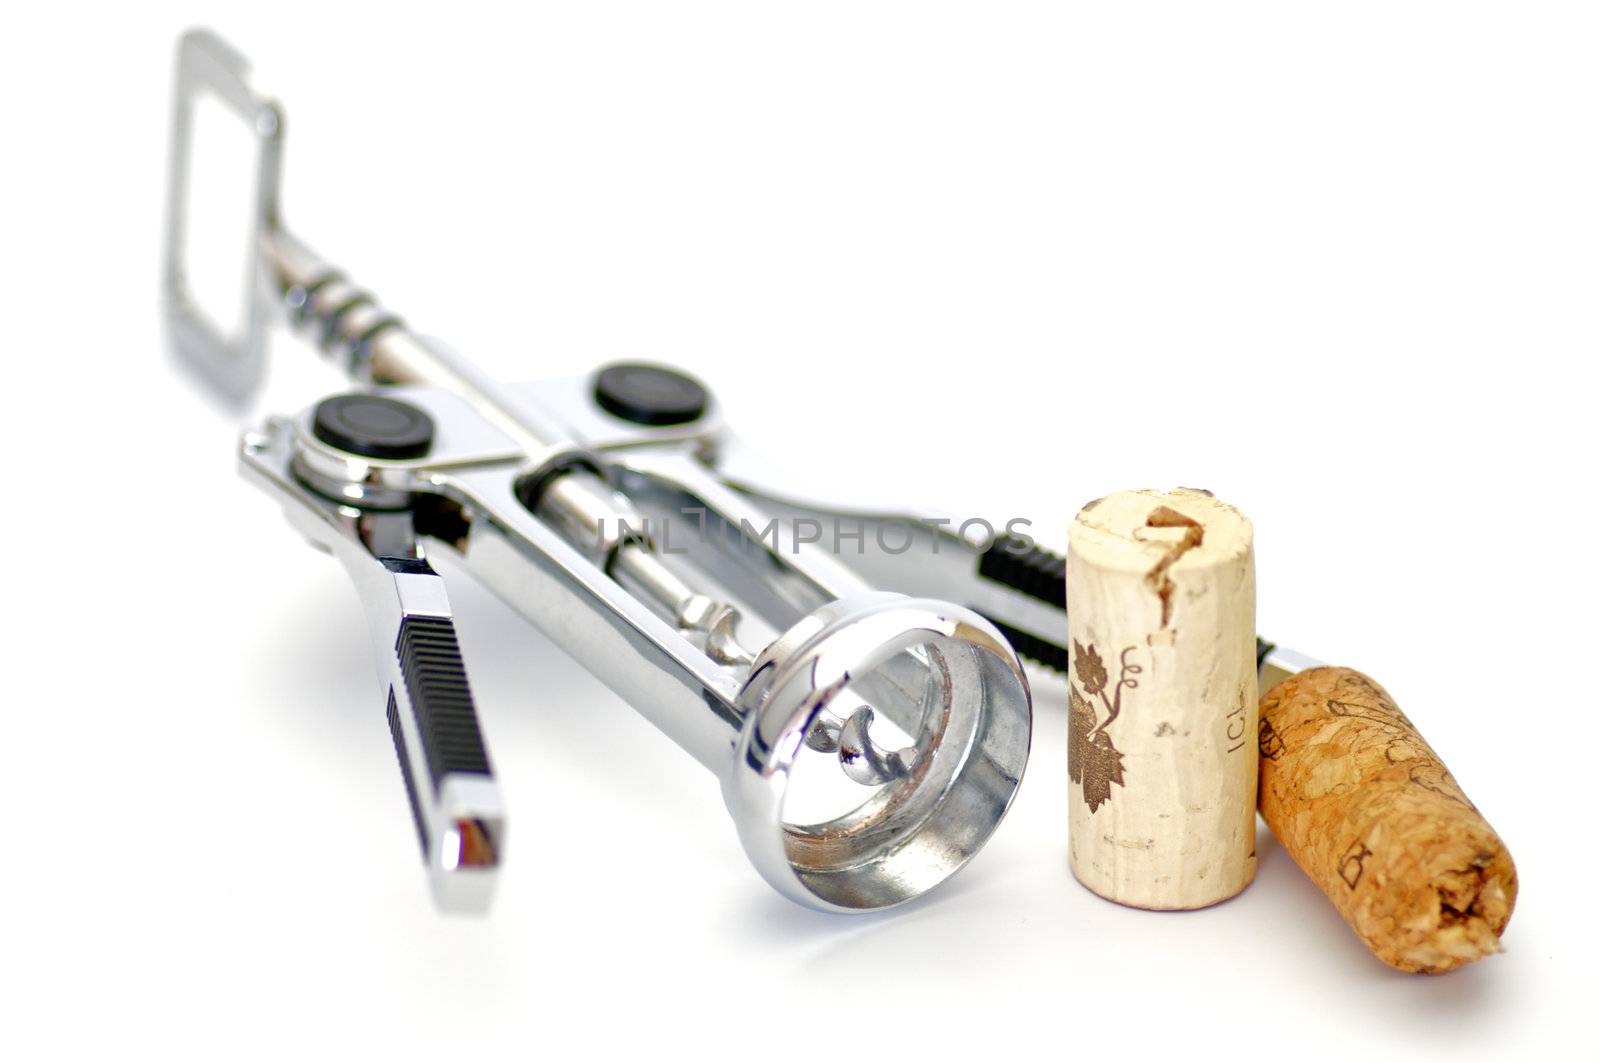 Corkscrew and two wine corks by zhekos